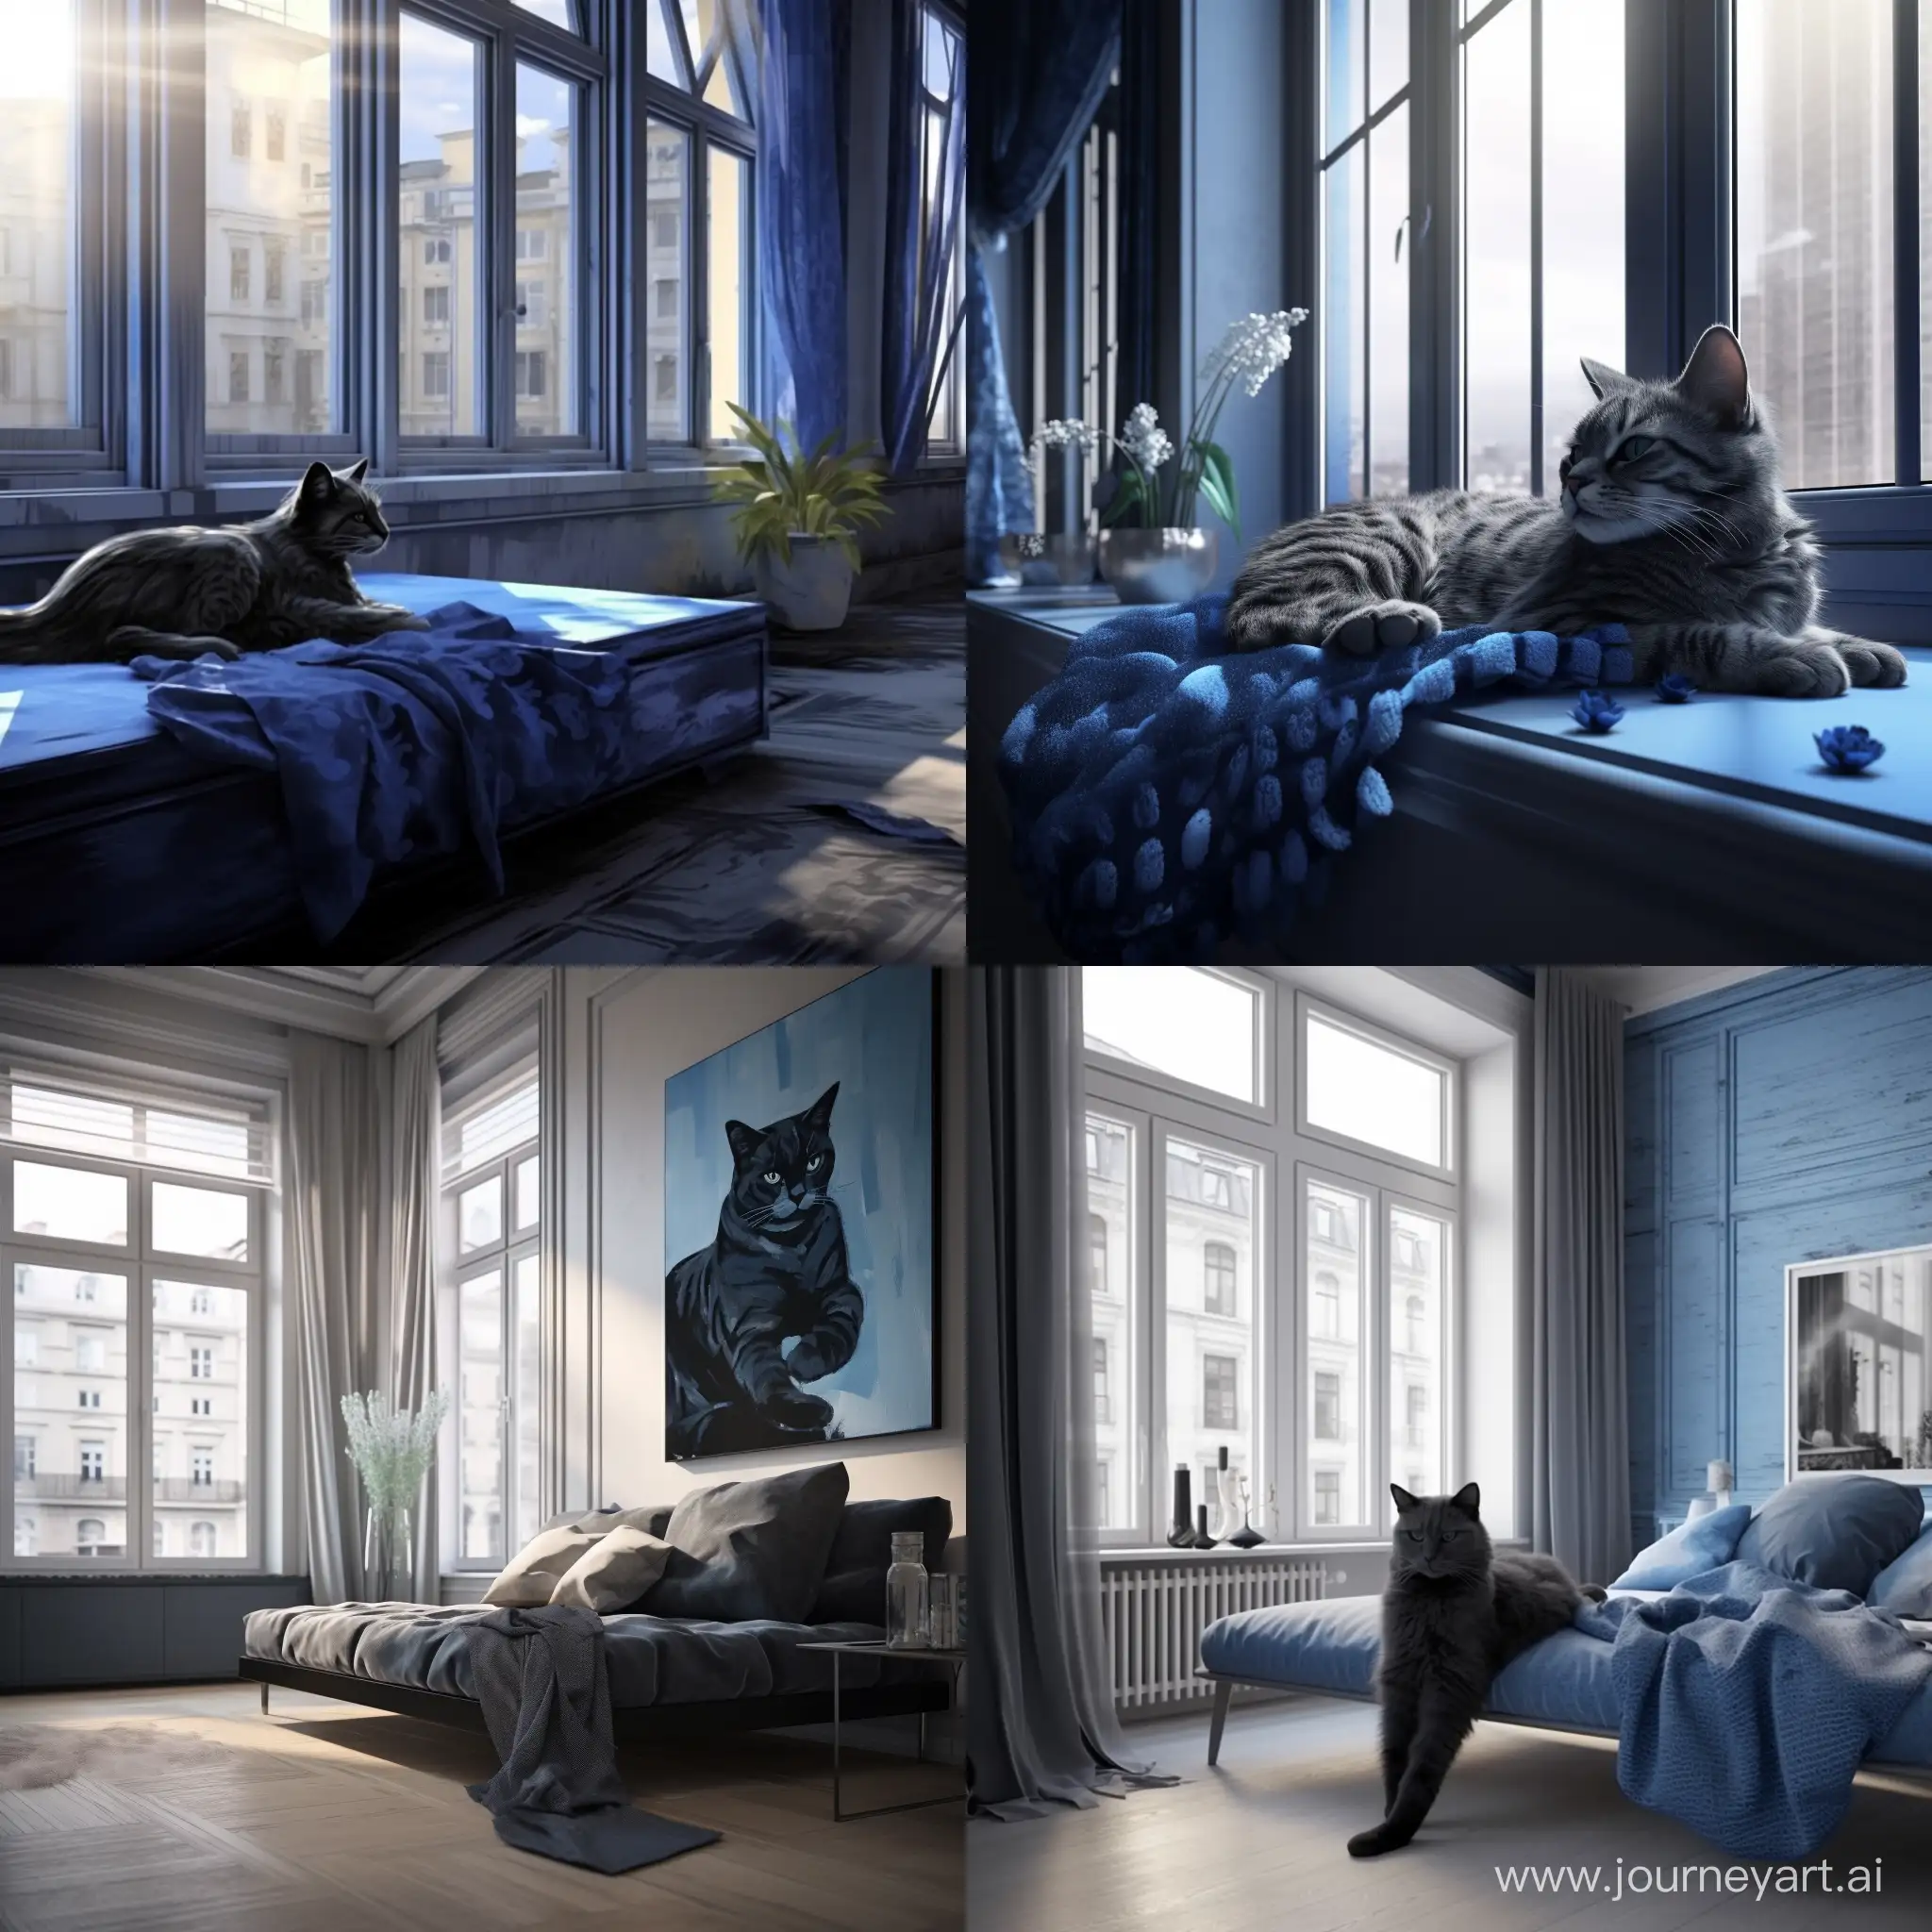 голубая кошка с черными узорами лениво разлеглась на фоне современной квартиры, мягкий естественный свет проникает через окна отбрасывая нежные блики на кошку